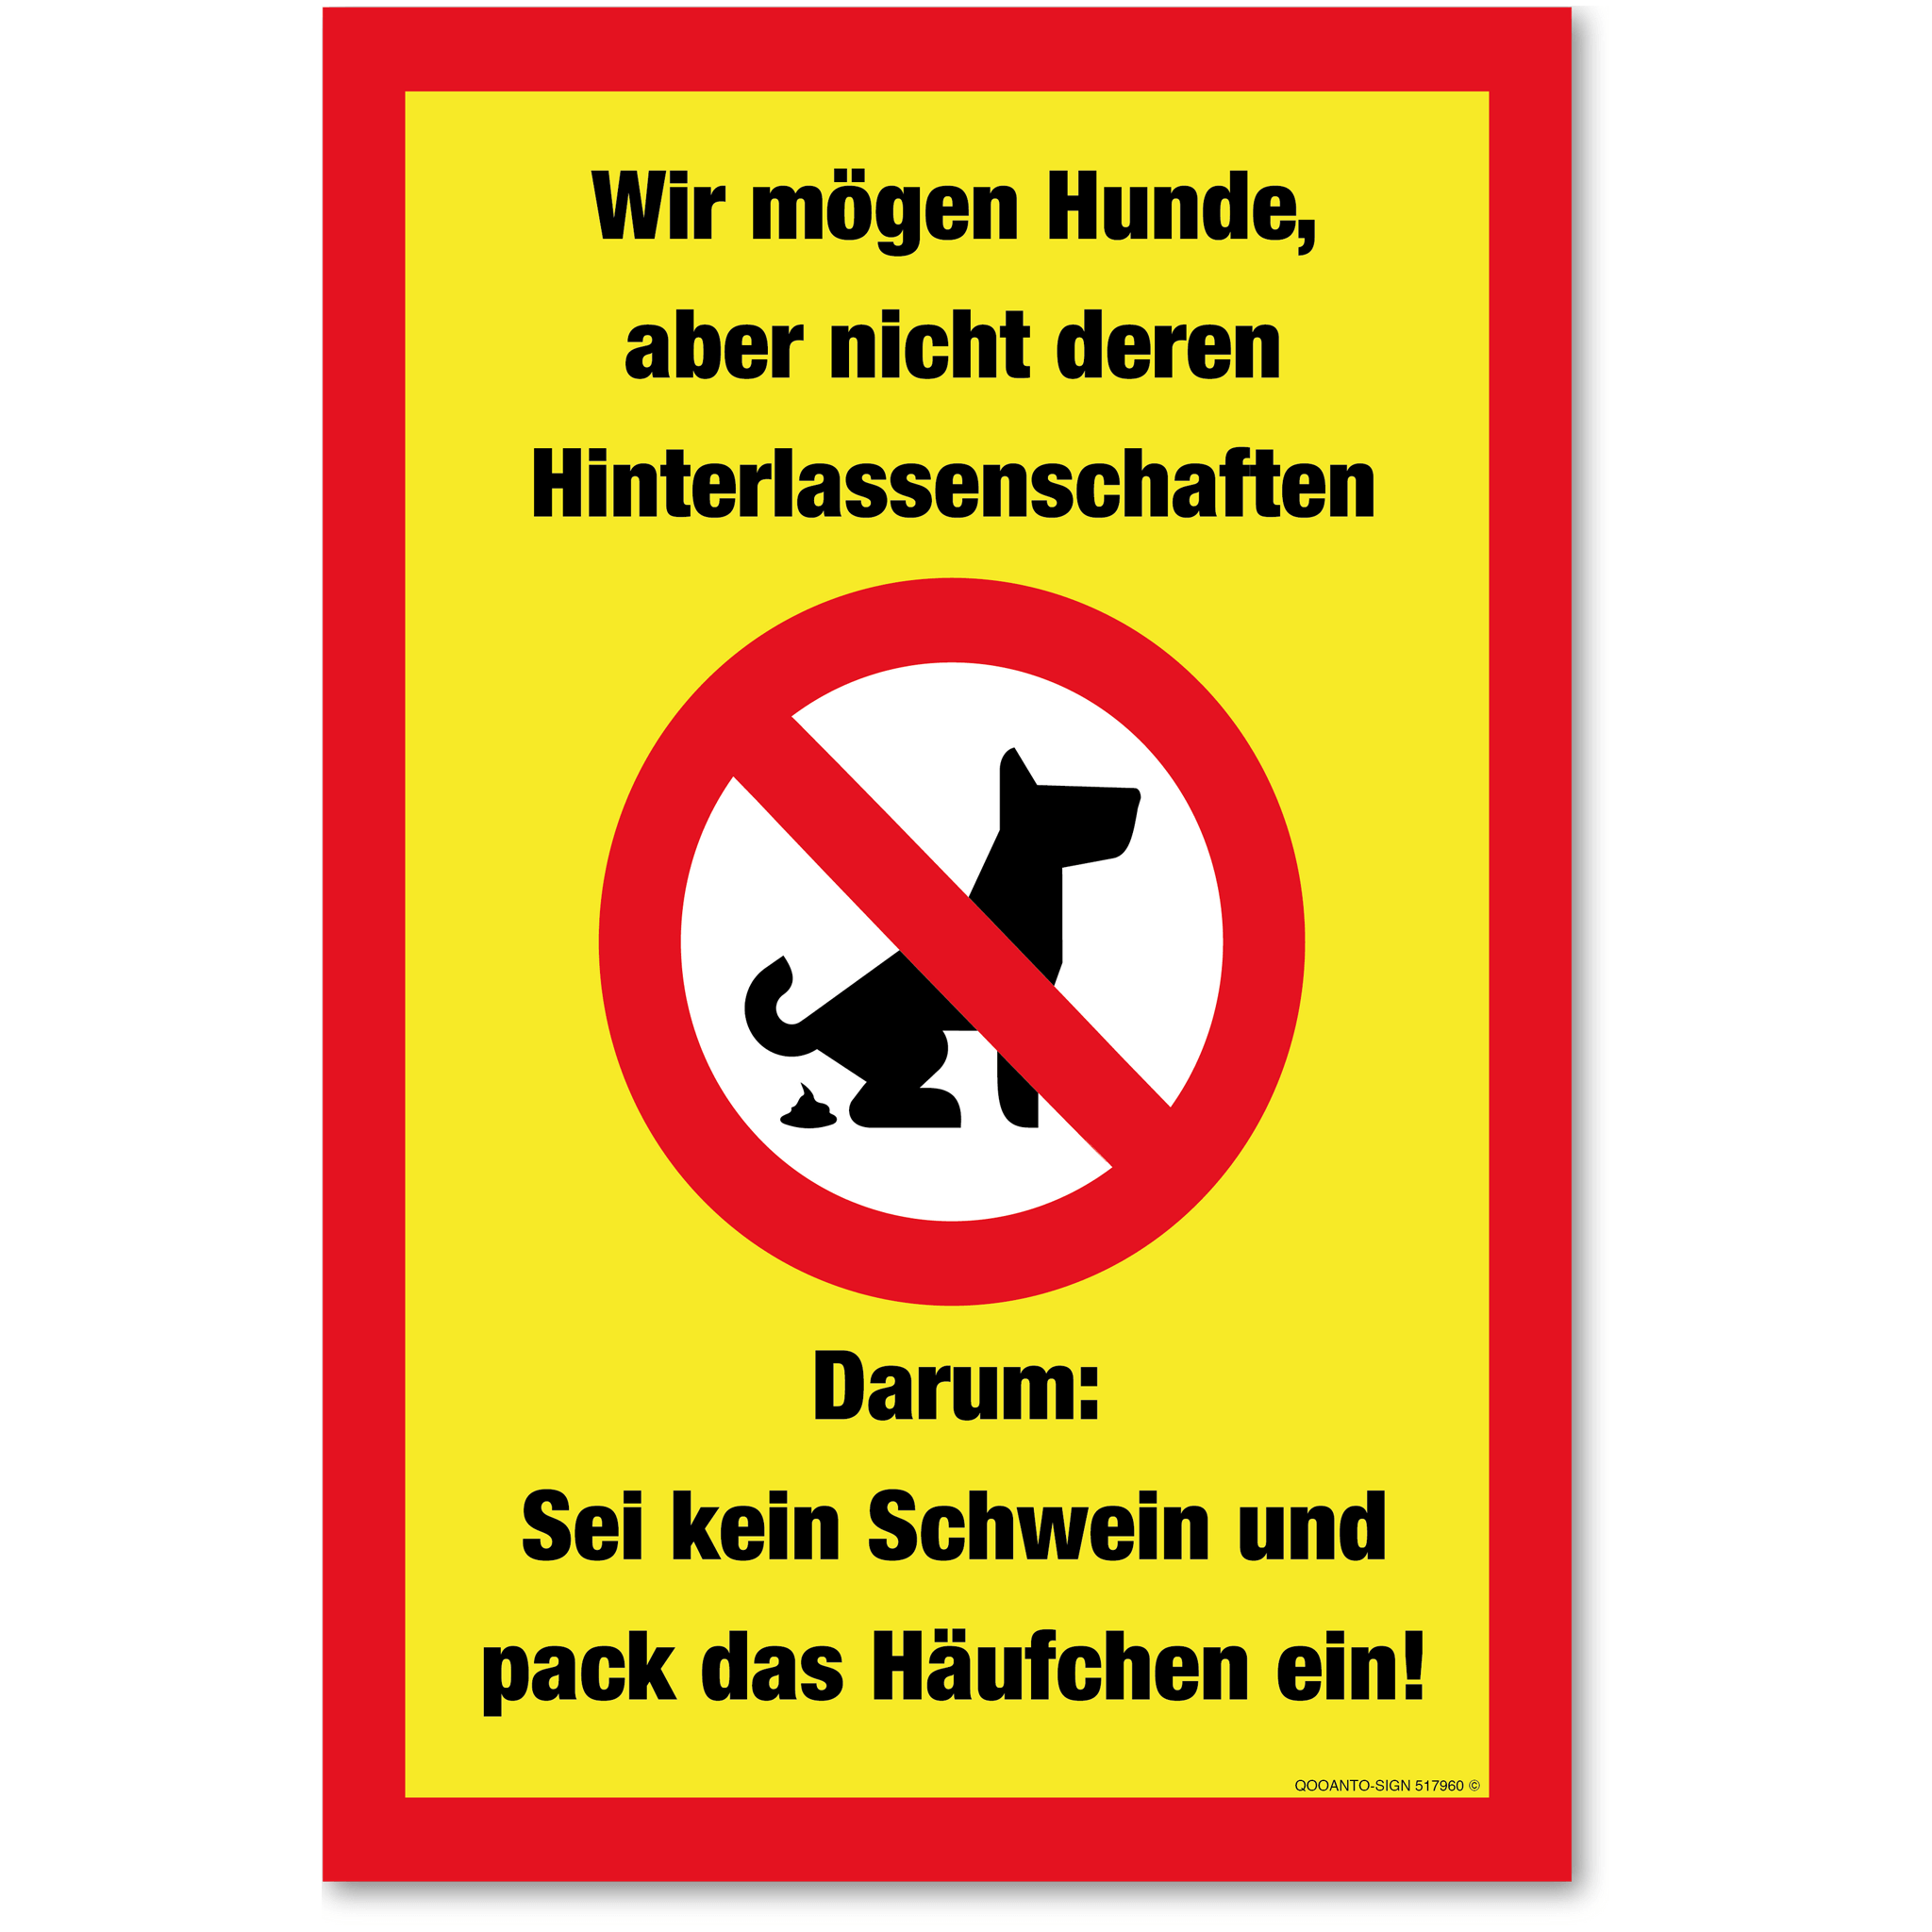 Wir mögen Hunde, aber nicht deren Hinterlassenschaften - Darum: Sei kein Schweiz und pack das Häufchen ein!, gelb, Schild oder Aufkleber